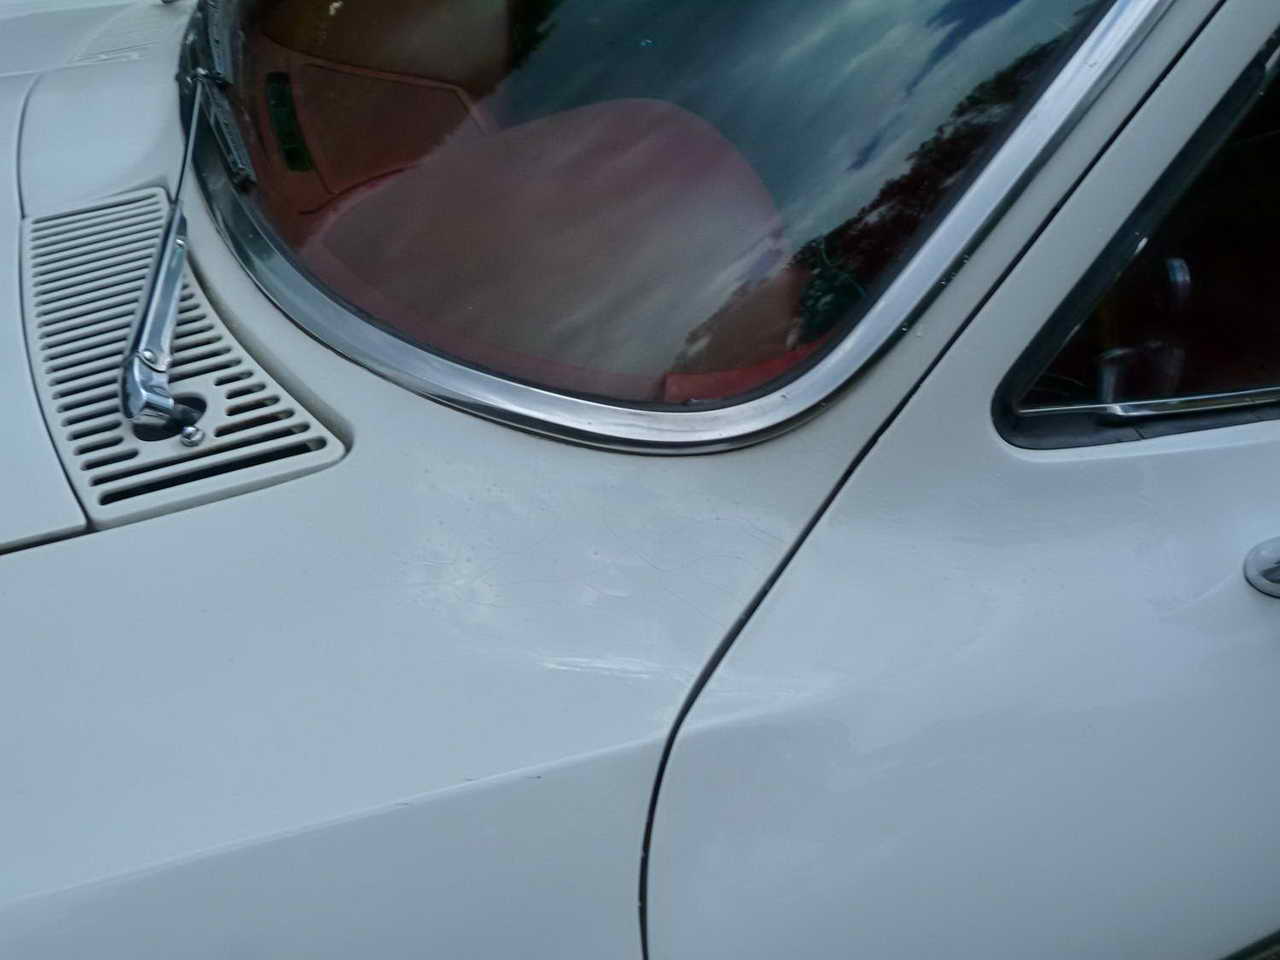 1965 Corvette Coupe Ermine White